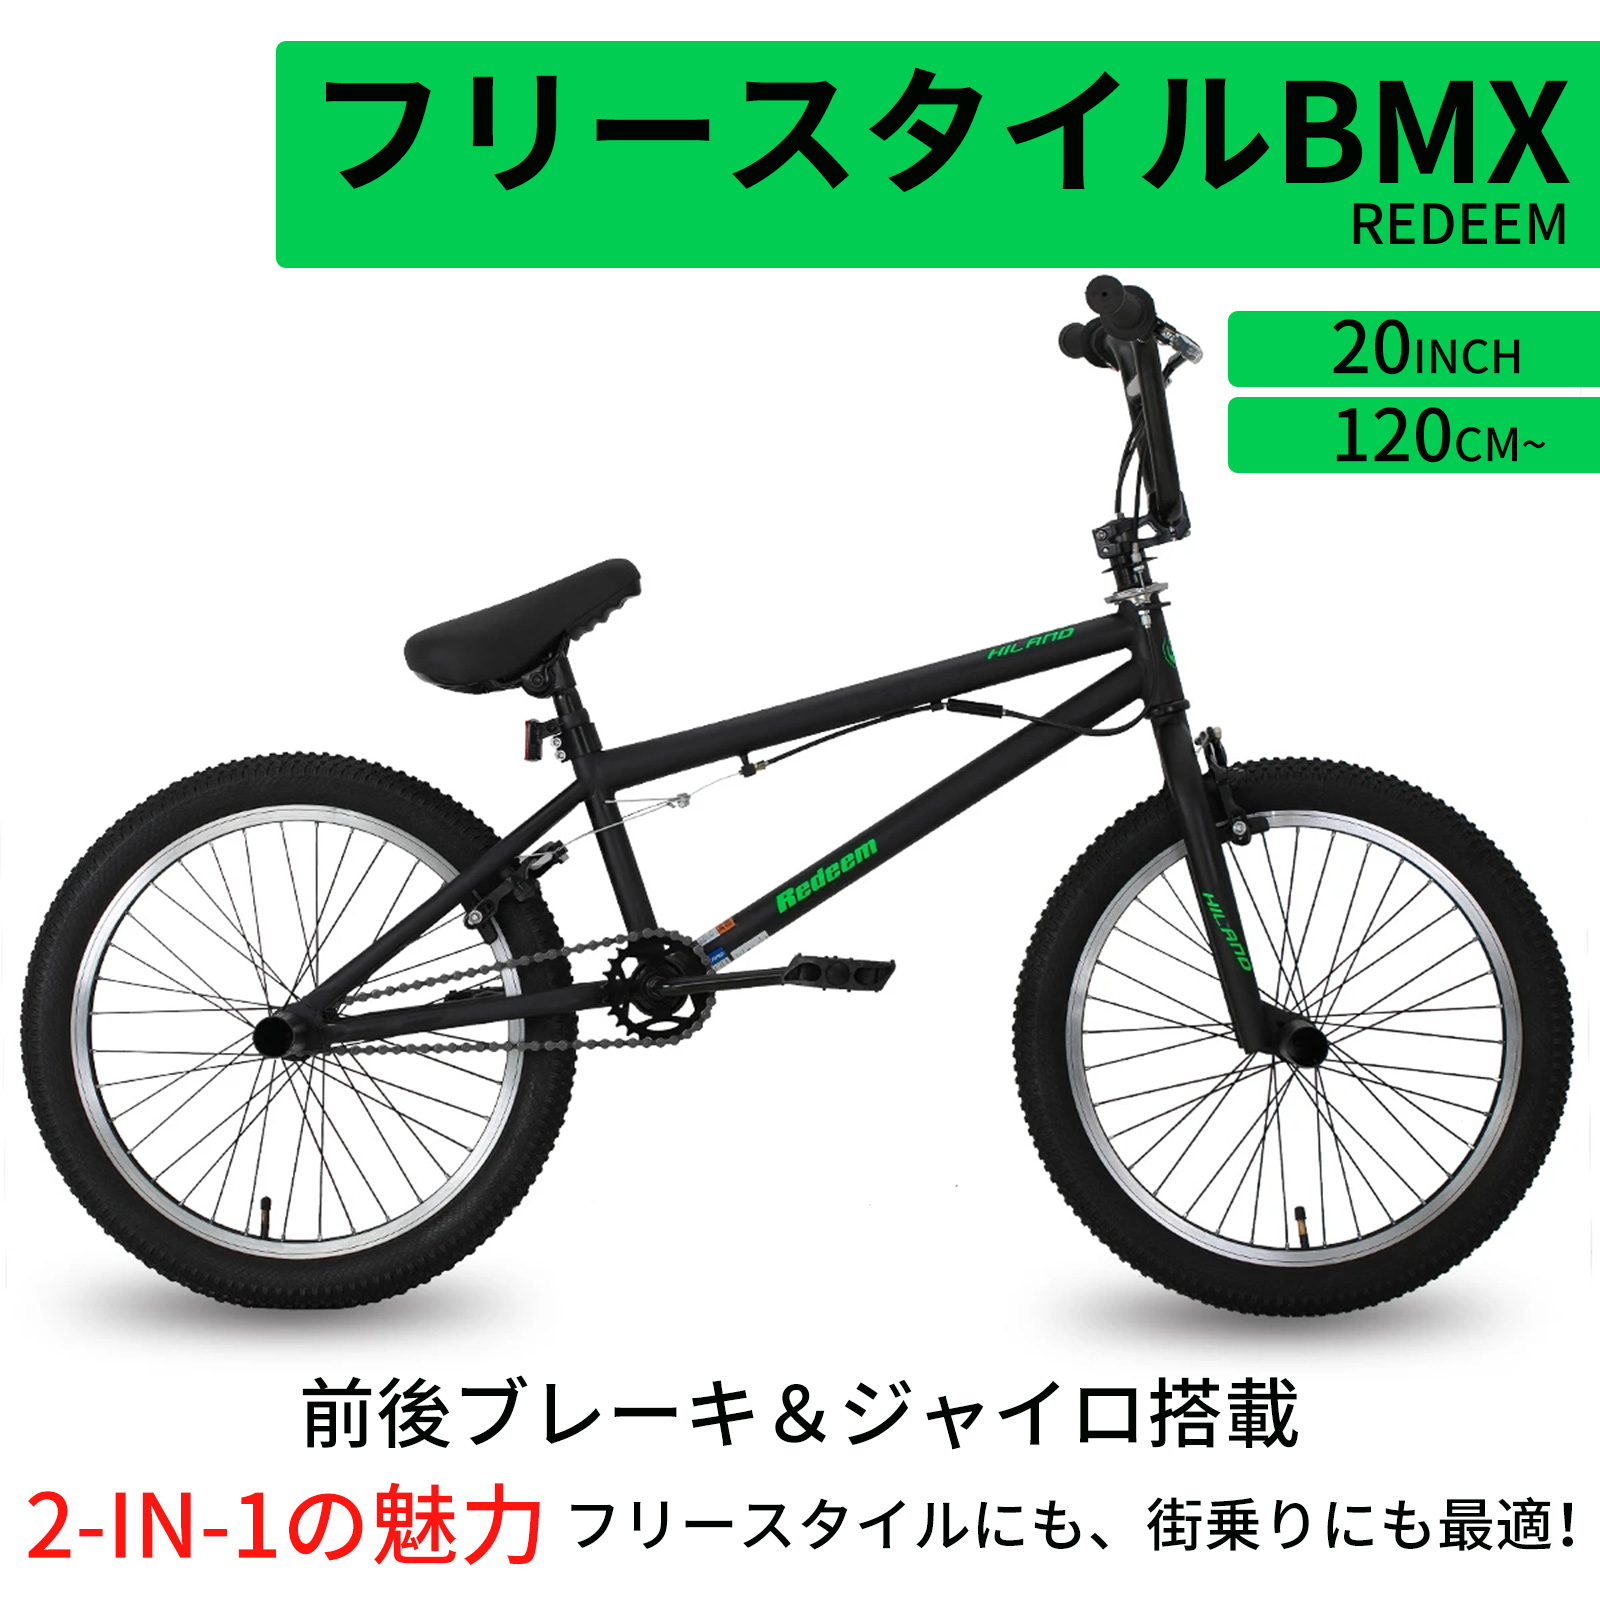 【楽天市場】「送料無料」HILAND 子供自転車 20インチ BMX自転車 